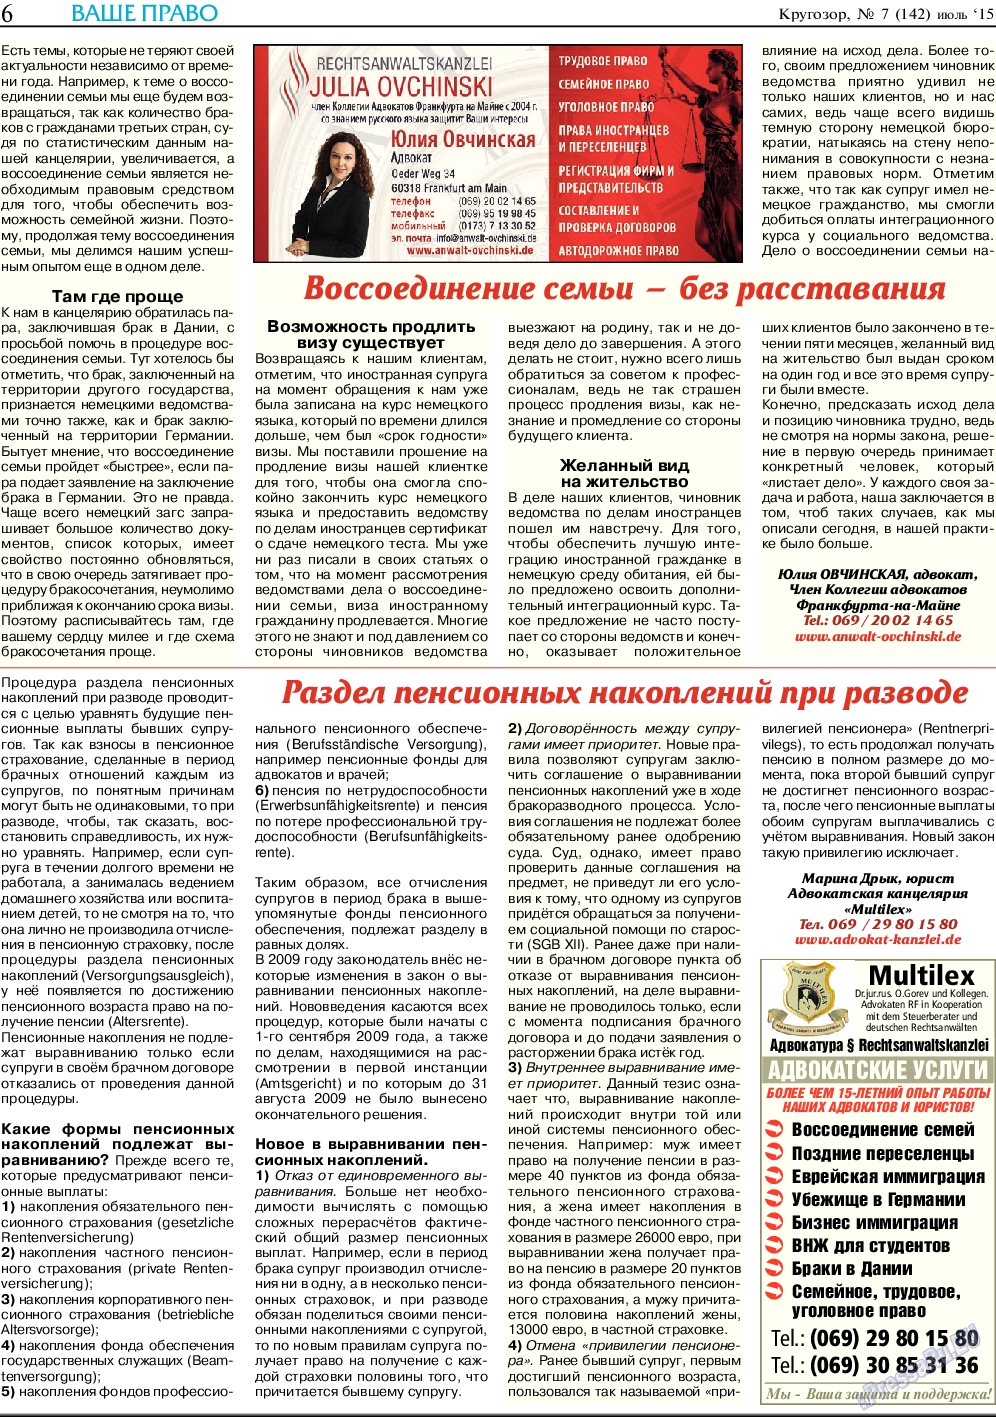 Кругозор, газета. 2015 №7 стр.6